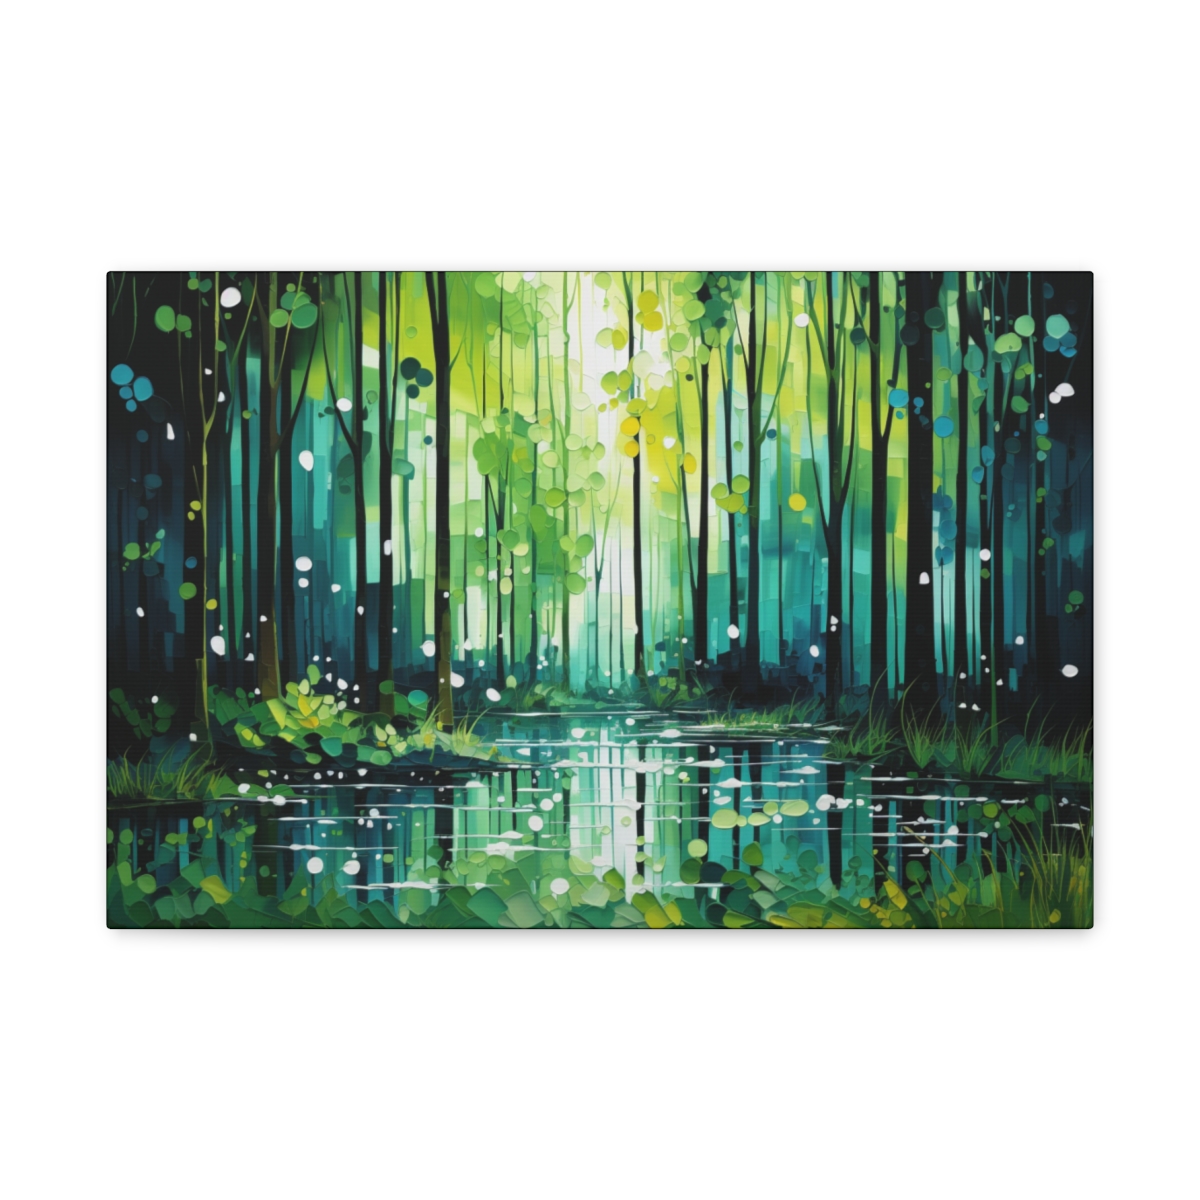 Forest Wall Art Canvas Print: Eternal Green